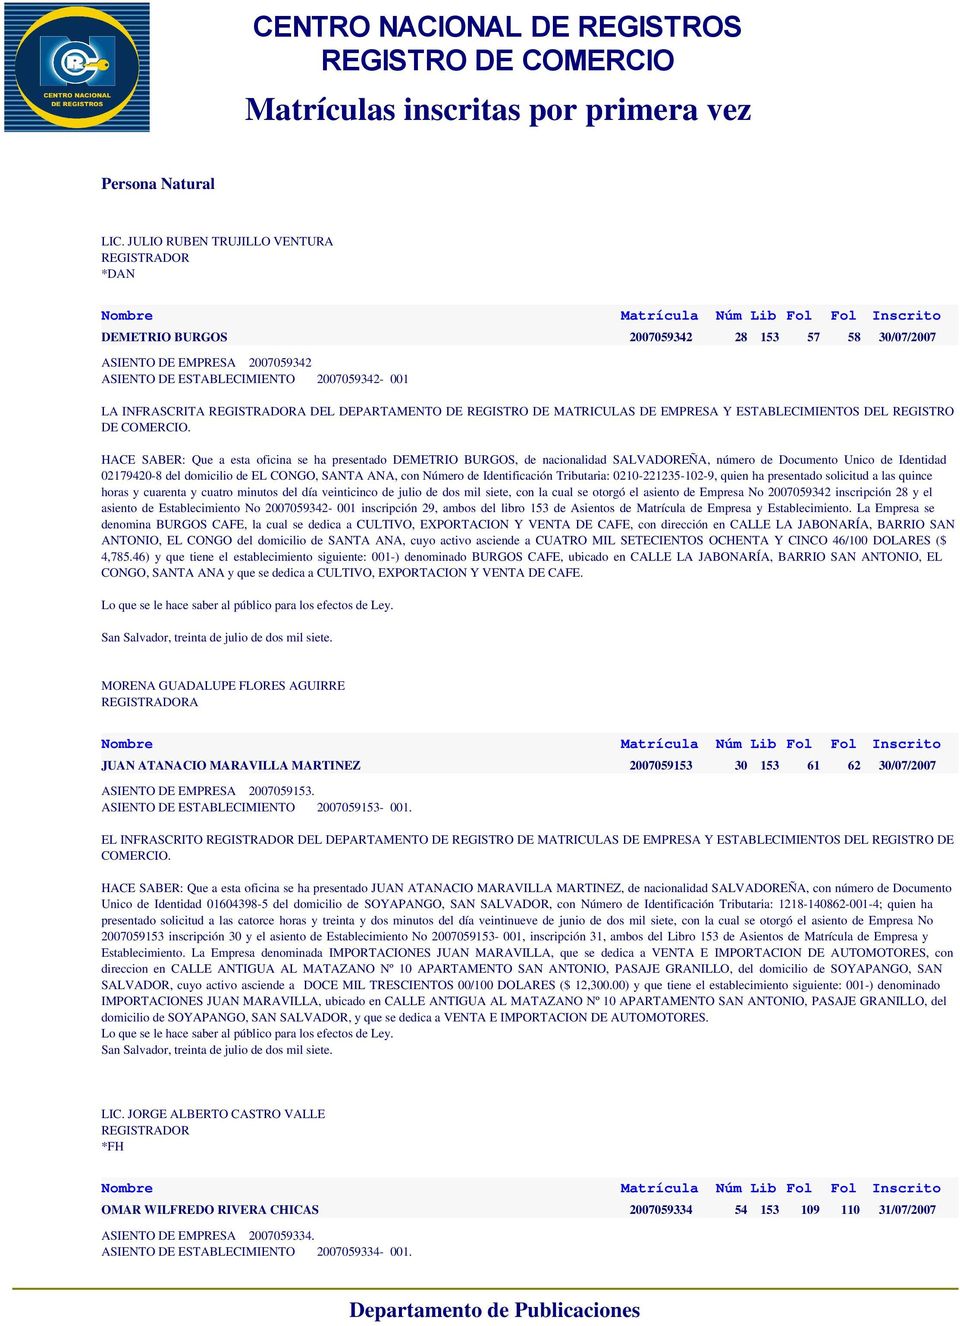 Documento Unico de Identidad 02179420-8 del domicilio de EL CONGO, SANTA ANA, con Número de Identificación Tributaria: 0210-221235-102-9, quien ha presentado solicitud a las quince horas y cuarenta y